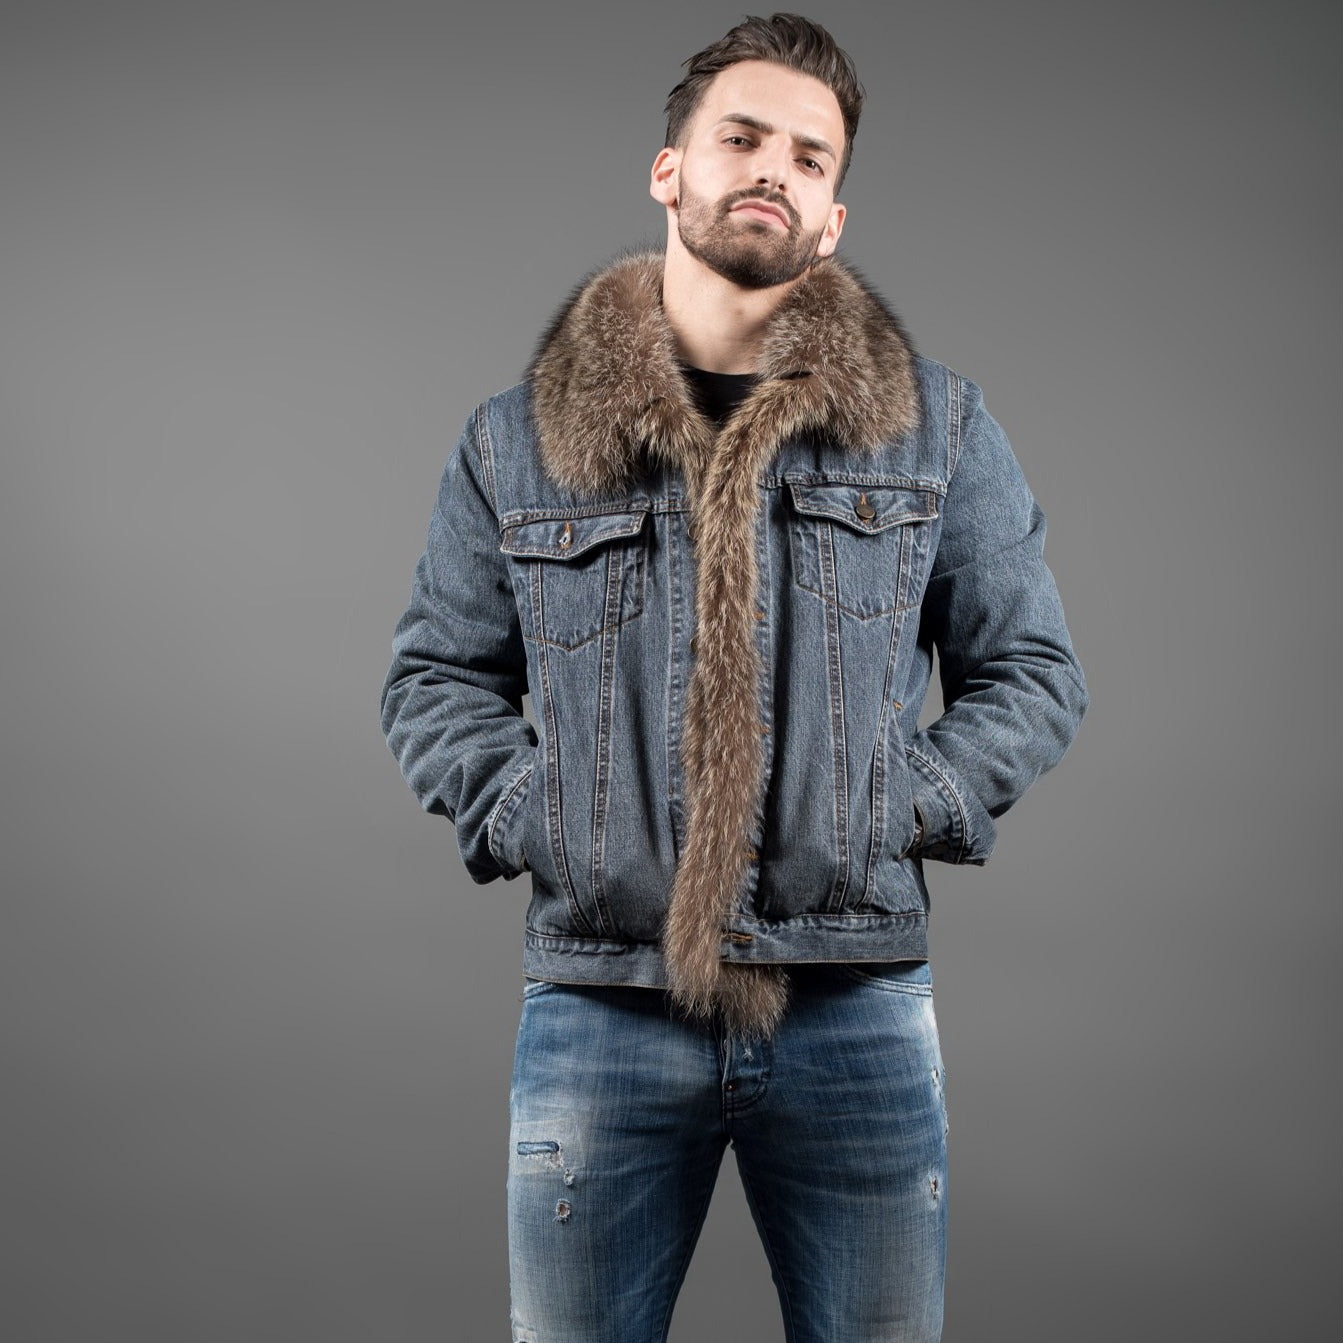 Fur Caravan Men's Denim Jacket with Fur 48